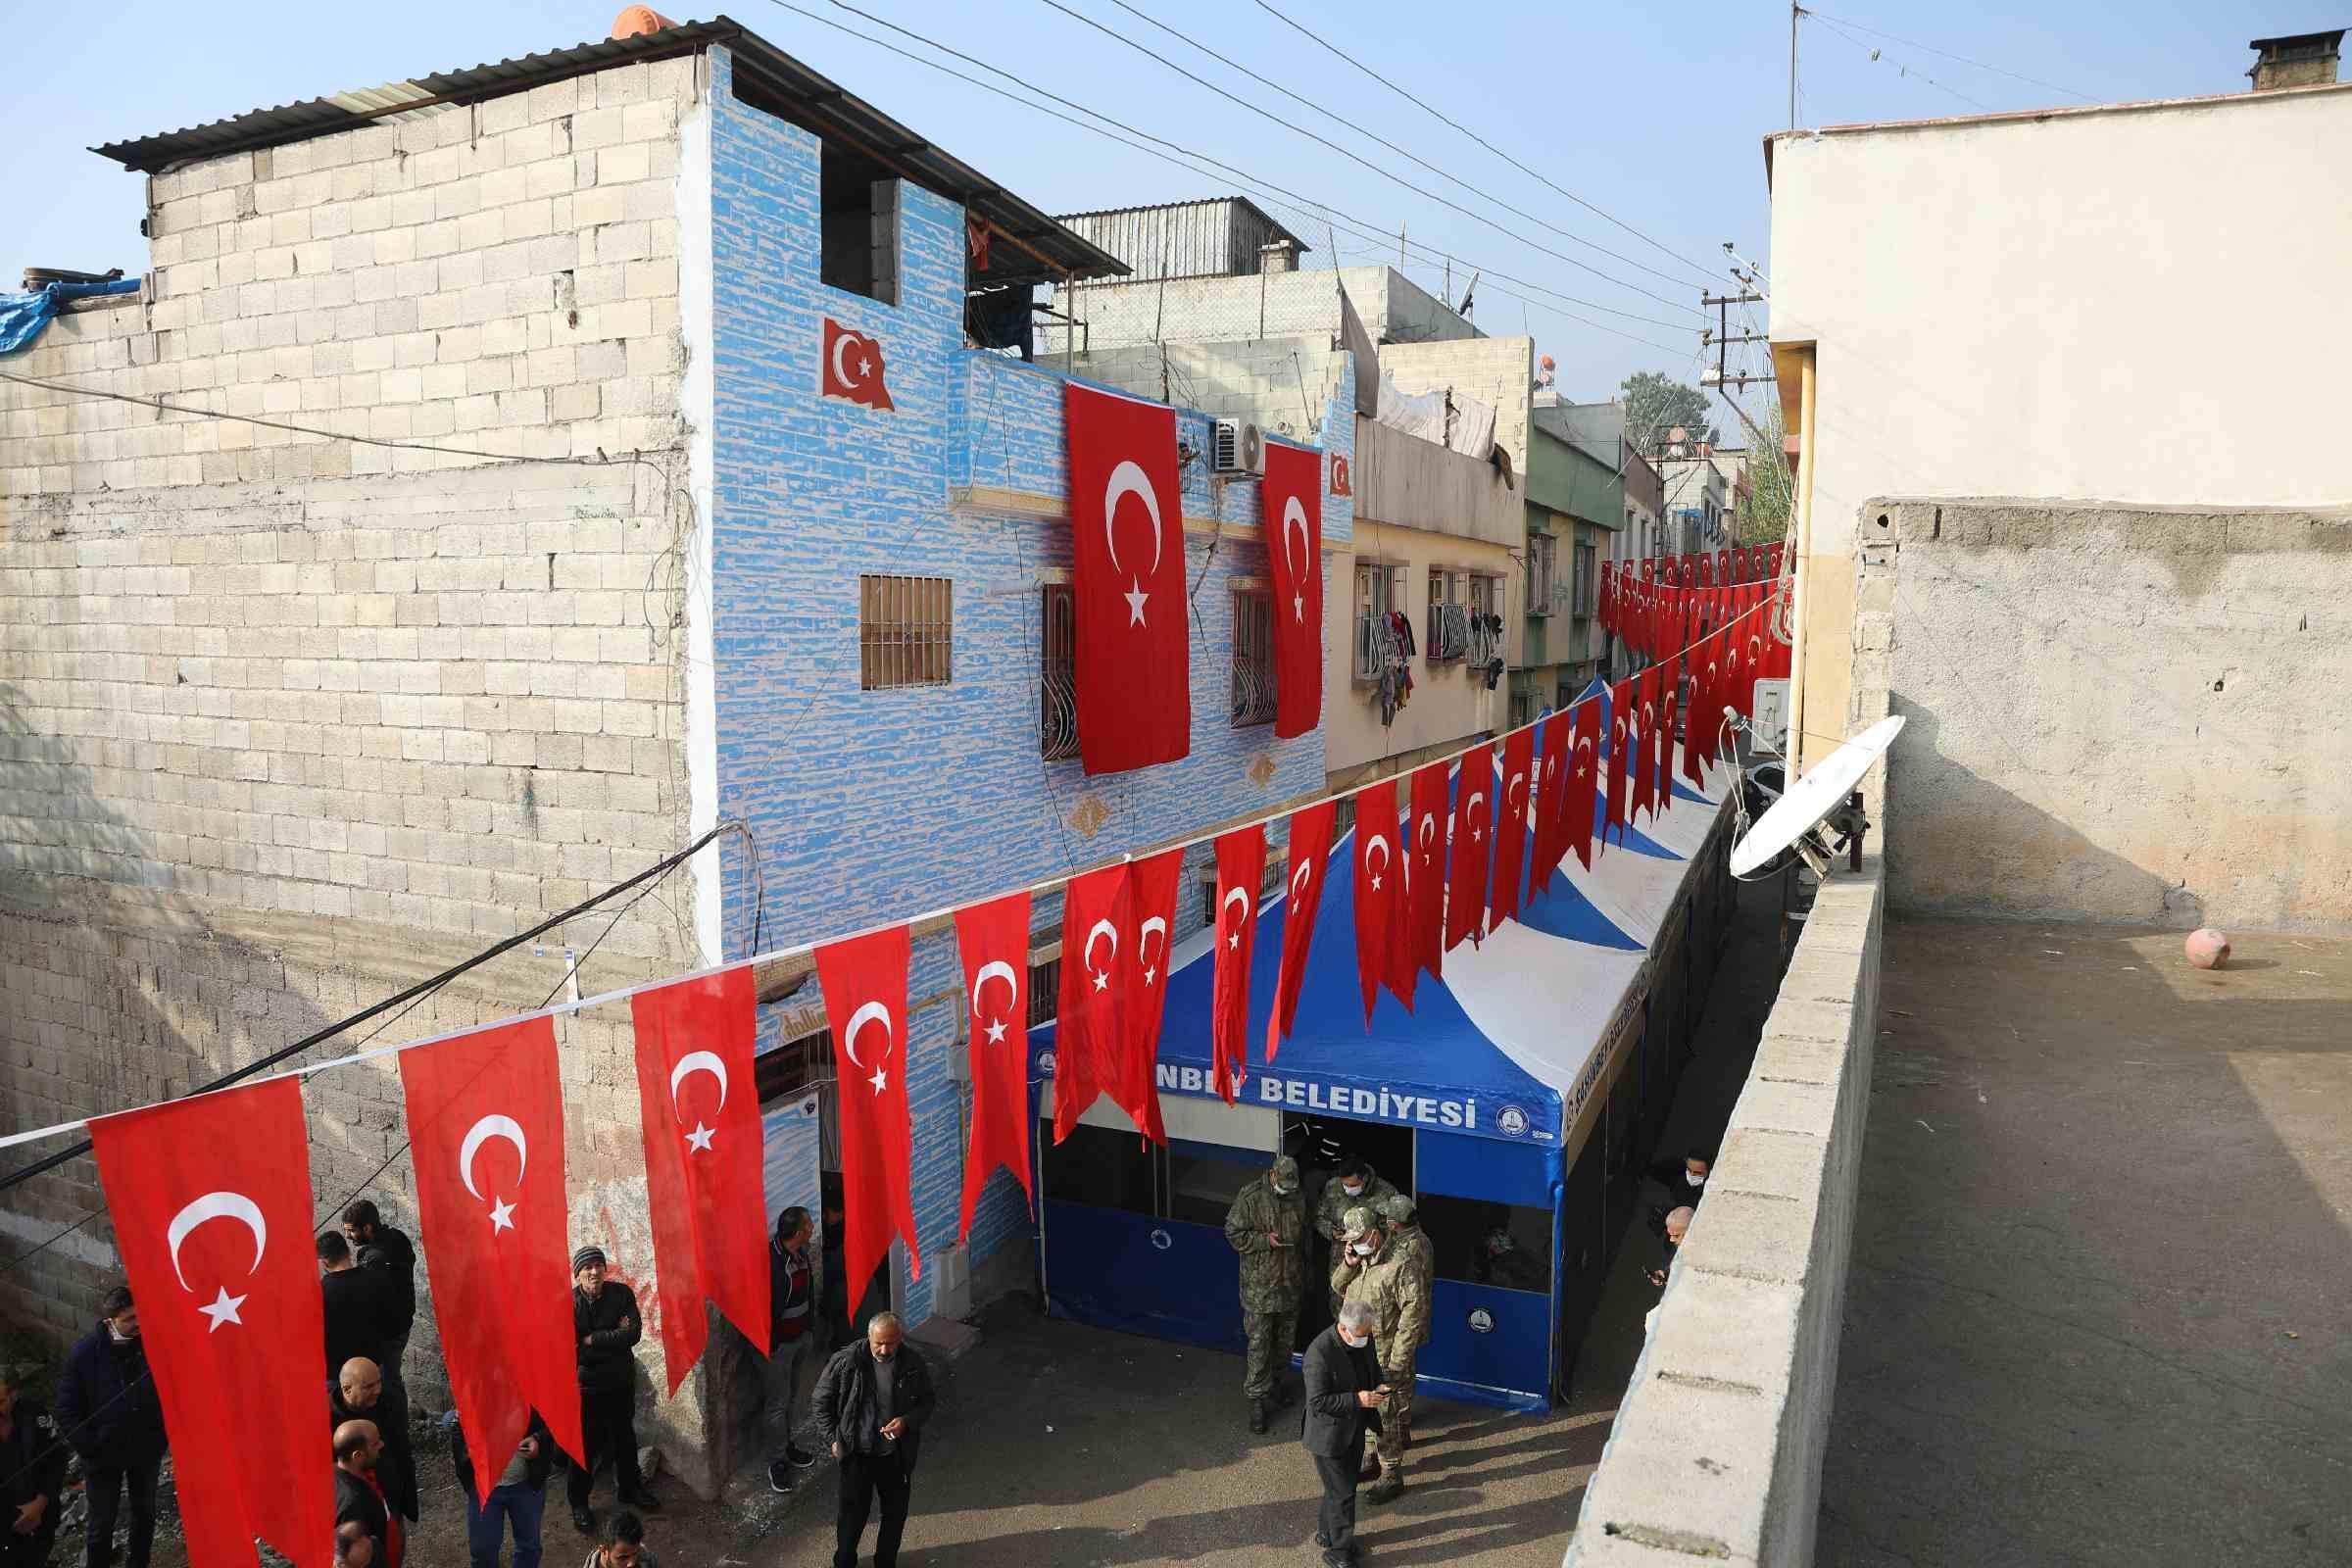 Şehit askerin cenazesi, memleketi Gaziantepe gönderildi